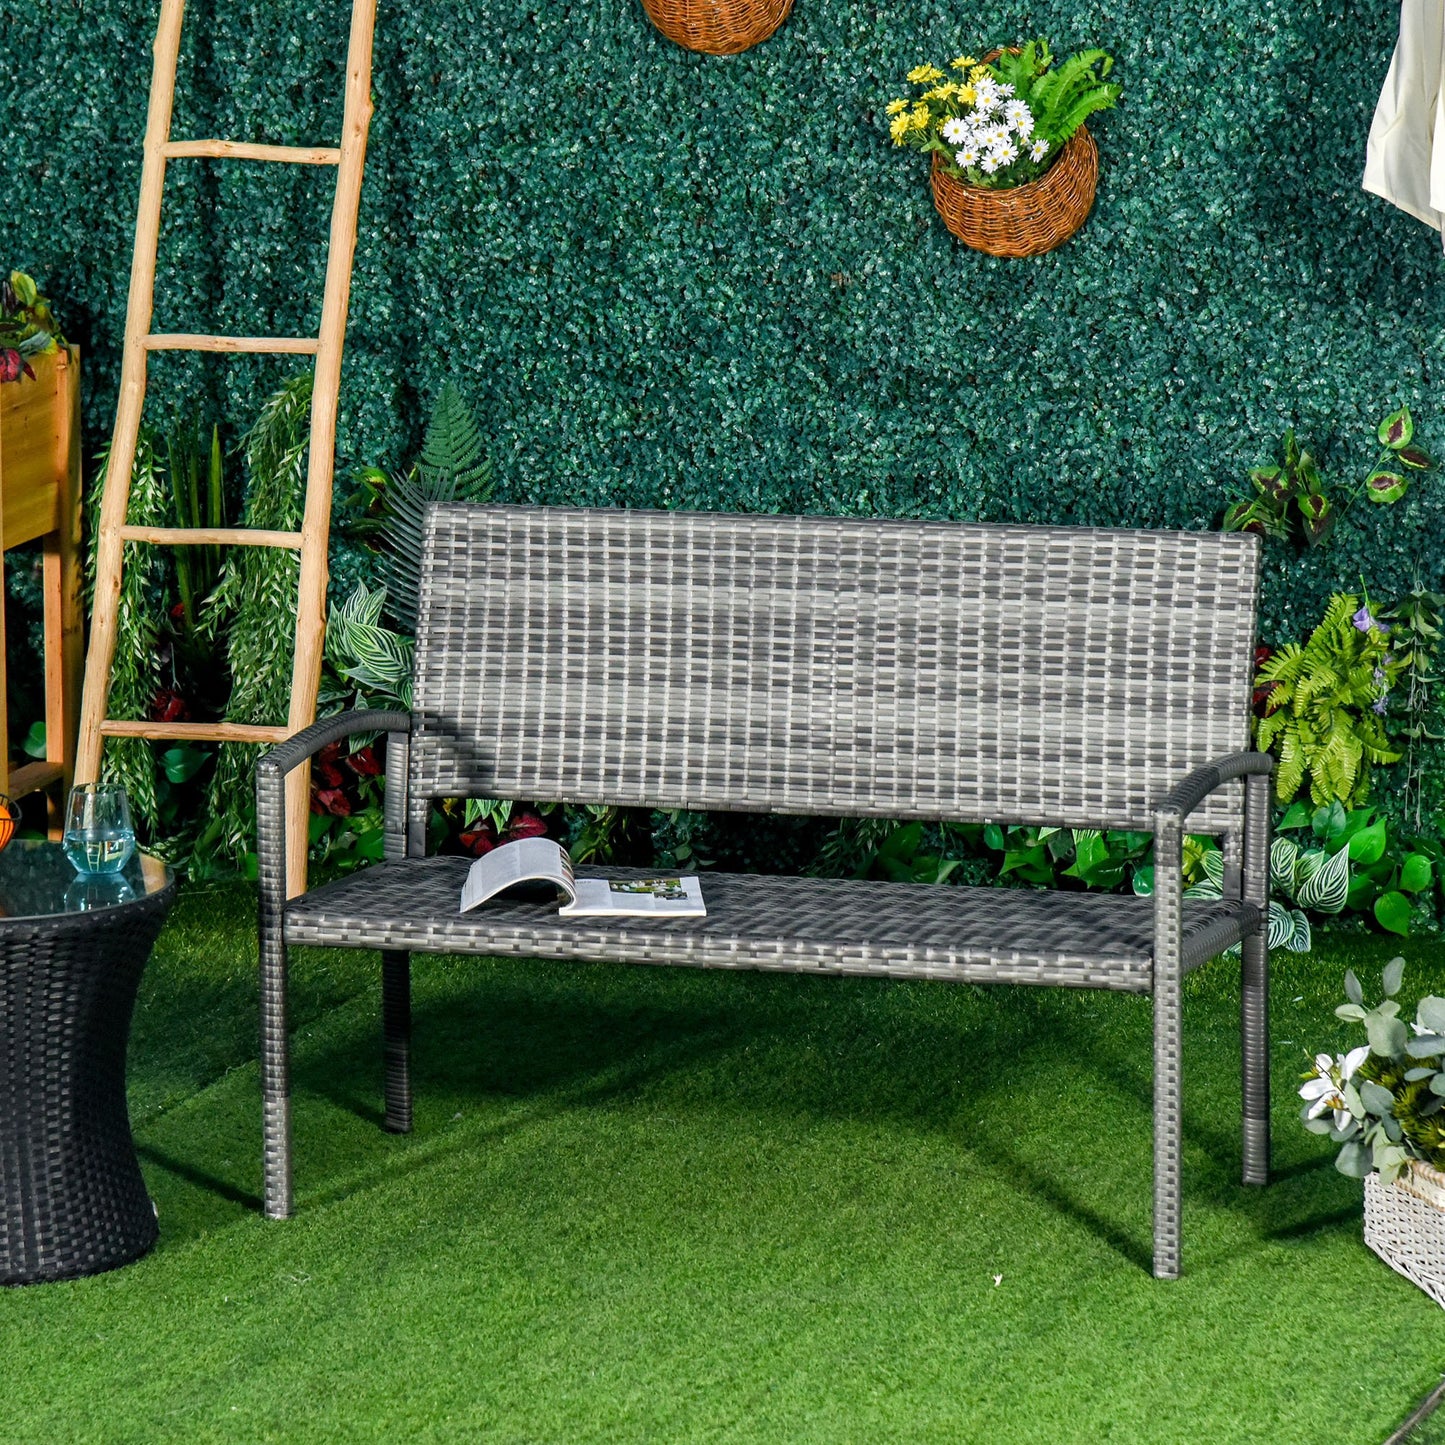 Outsunny Patio Rattan 2 Seater Garden Bench Love Seater Armchair Furniture Outdoor Garden